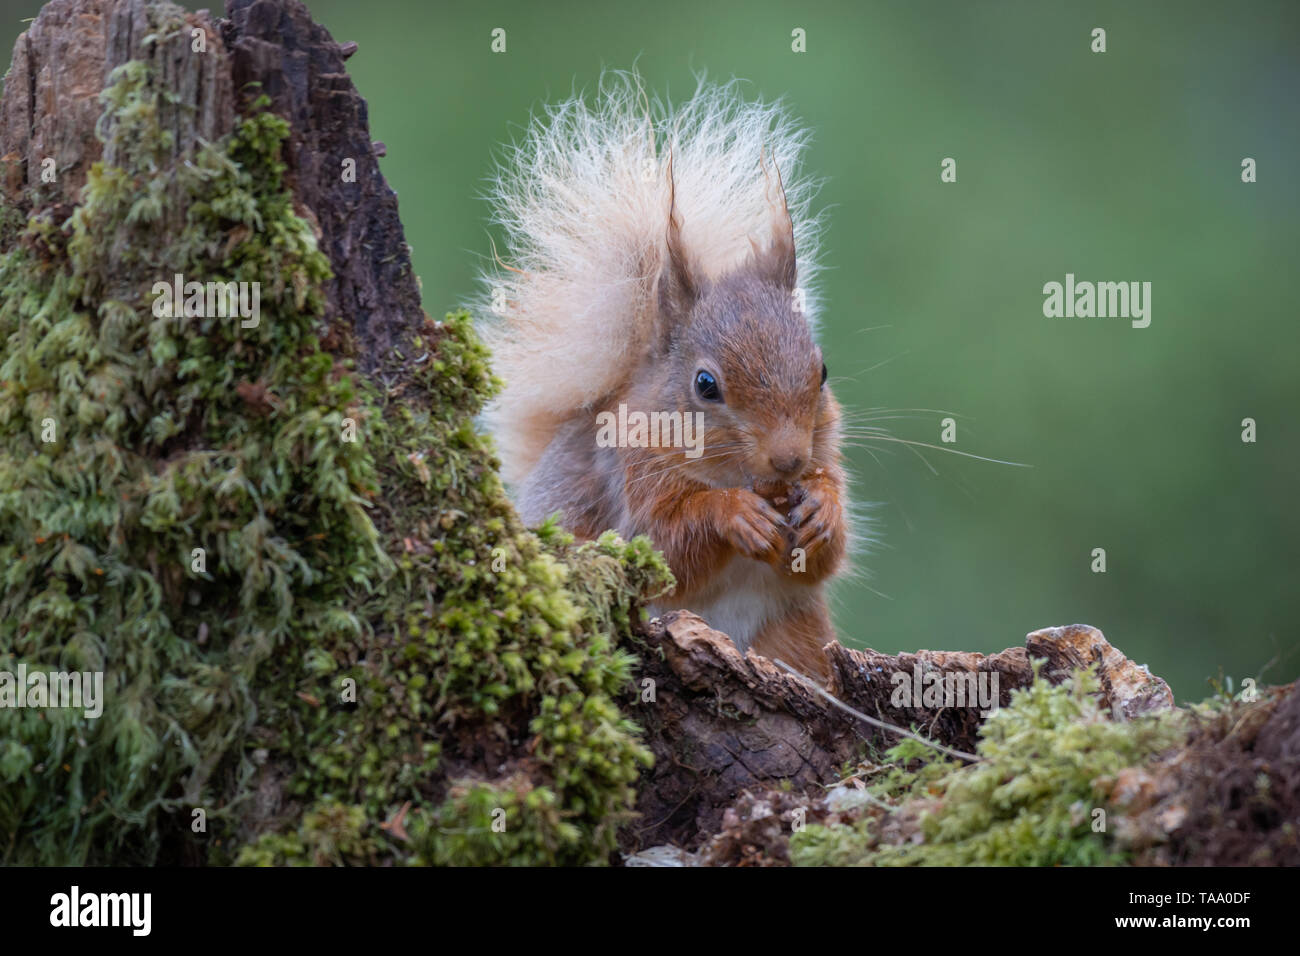 Un portrait avant l'image d'un écureuil roux avec une queue touffue assis sur une vieille souche d'arbre couverts de lichen mangeant une noisette Banque D'Images